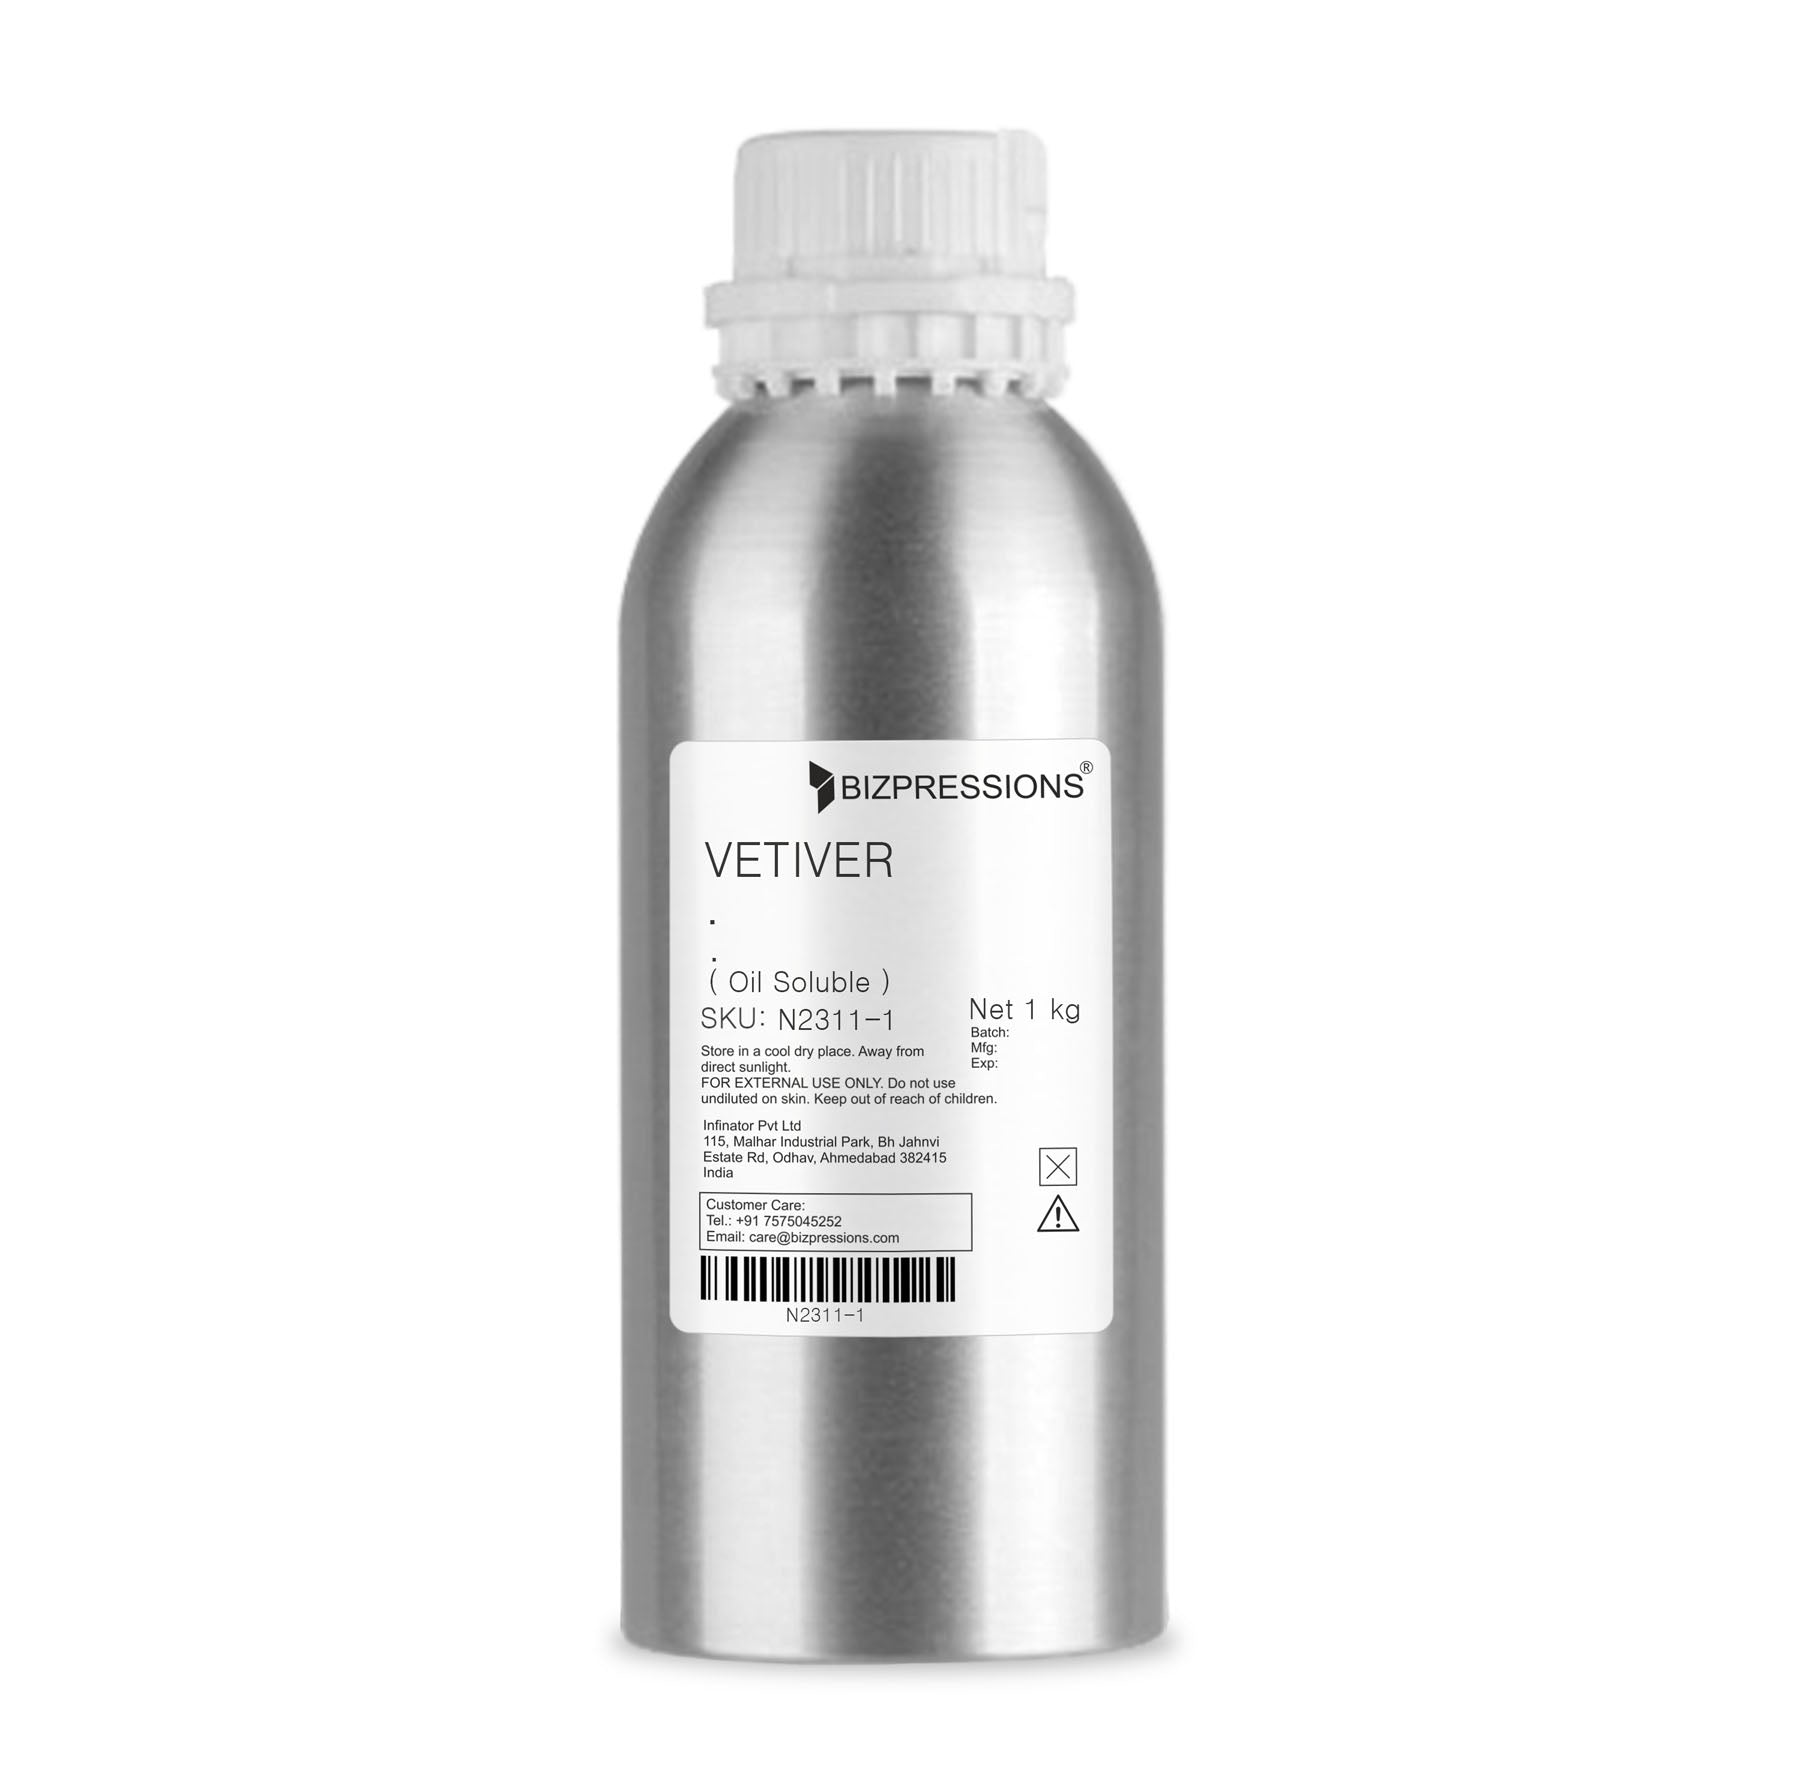 VETIVER - Fragrance ( Oil Soluble )